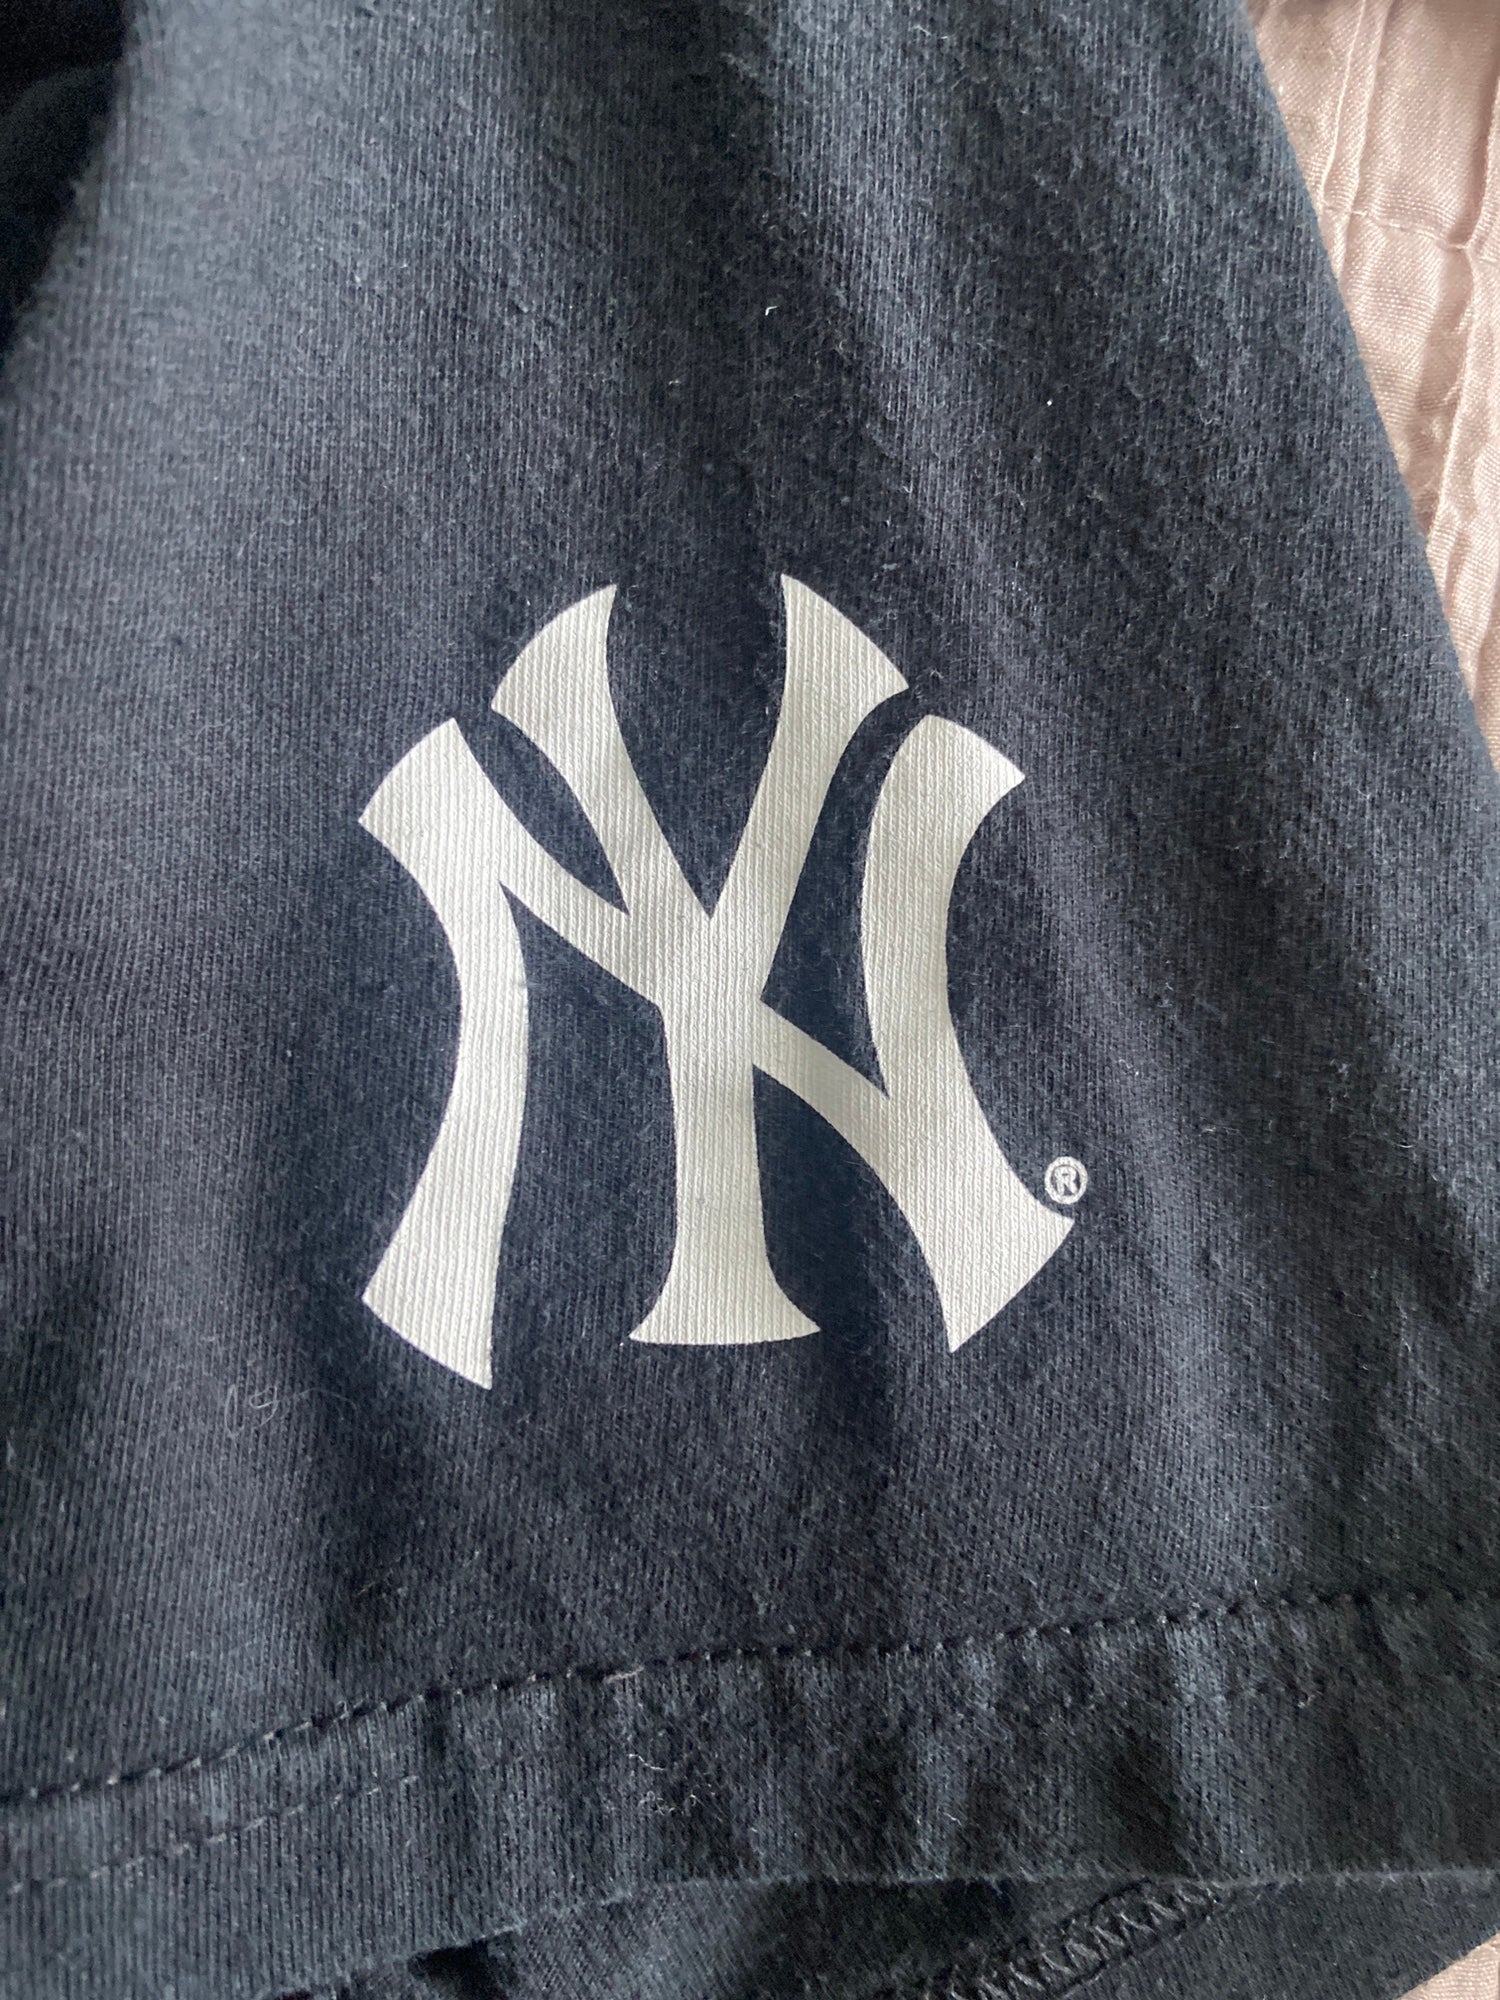 Respect Is Earned T-shirt Re2pect Derek Jeter Captain Ny Yankees T